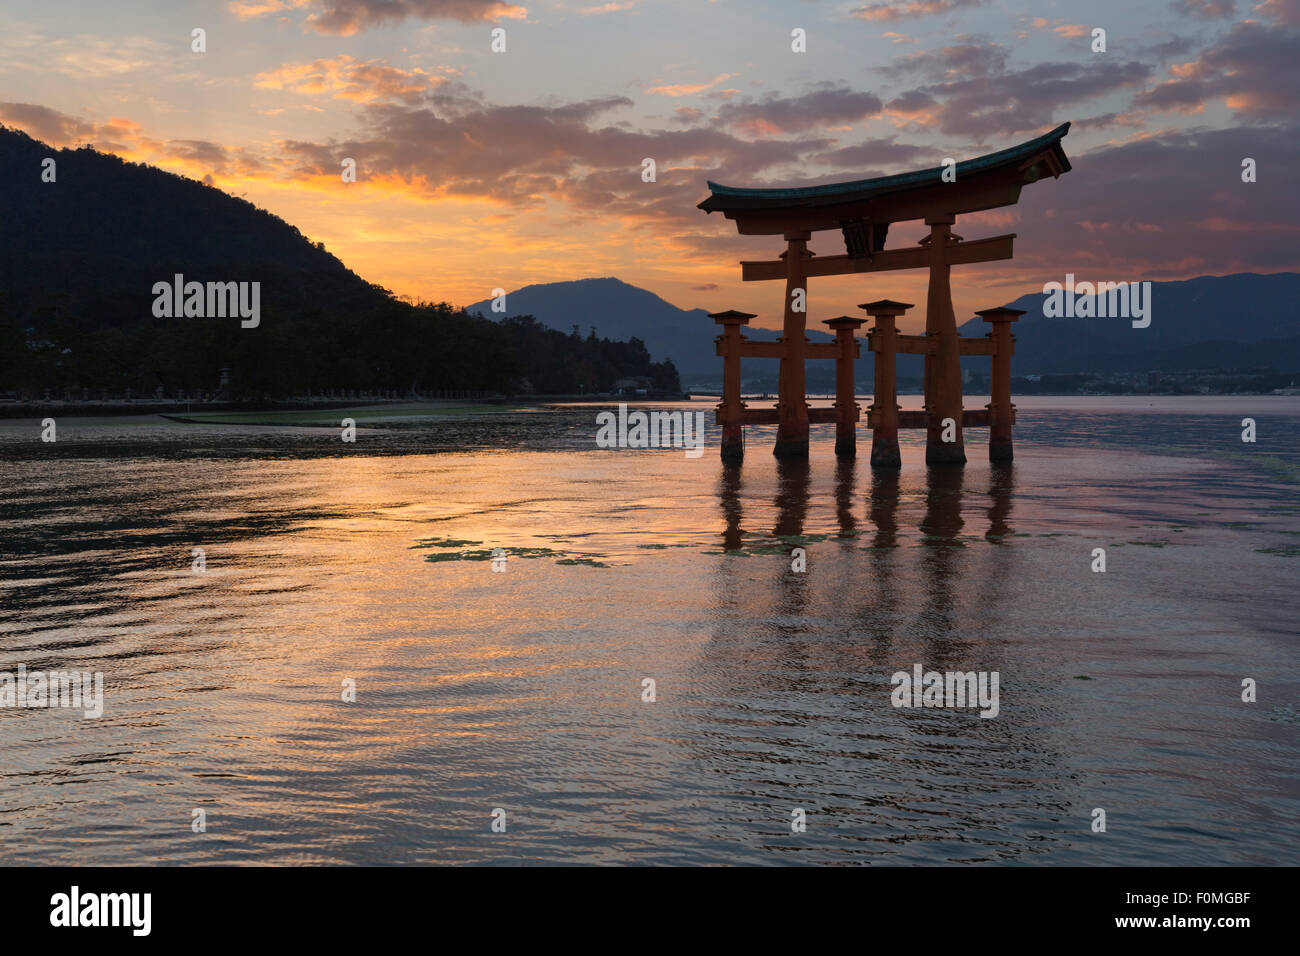 Le Miyajima de torii flottant d'Itsukushima au coucher du soleil, l'île de Miyajima, dans l'ouest de Honshu, Japon, Asie Banque D'Images